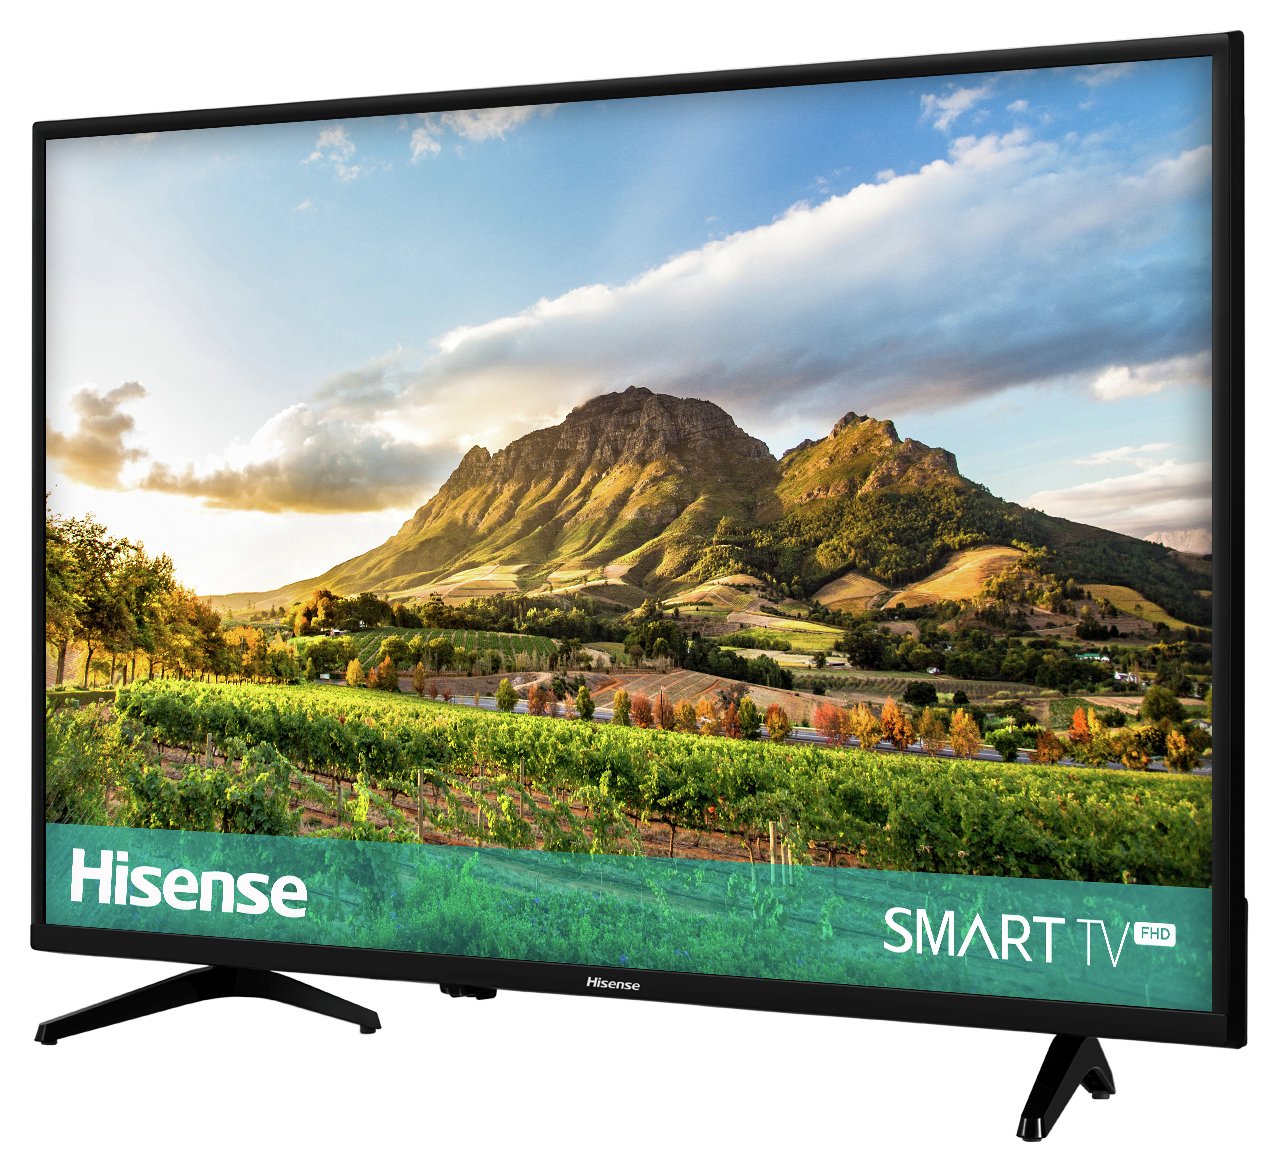 Hisense 32 Inch H32a5600uk Smart Hd Ready Tv Reviews